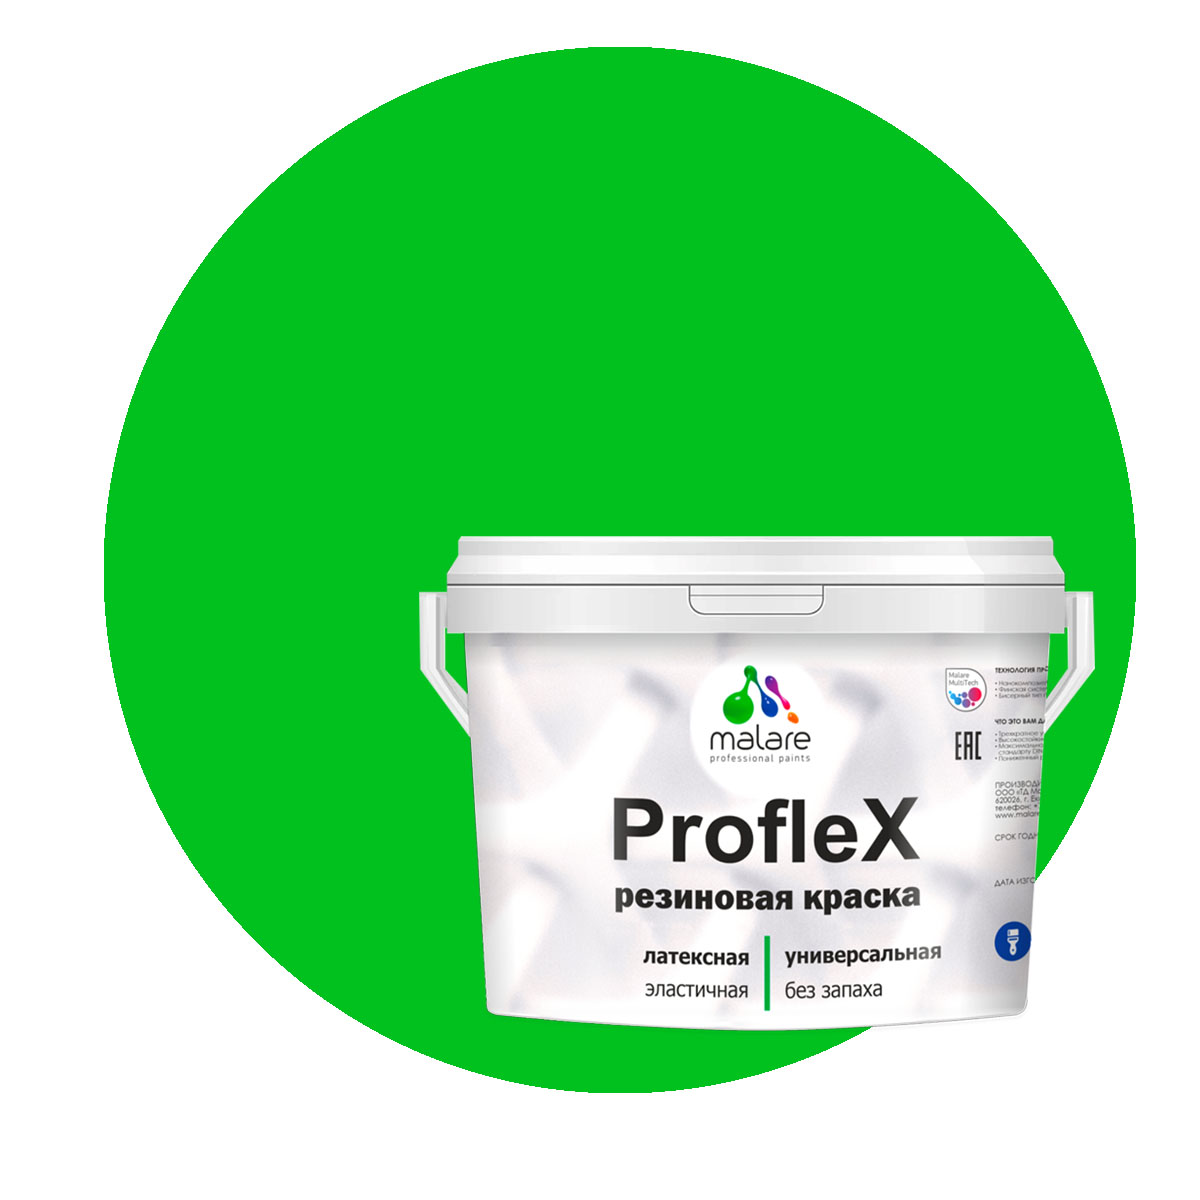 Краска Malare ProfleX для фасадов, интерьера, мебели, освежающий зеленый, 1 кг. щелочной очиститель фасадов зданий plex